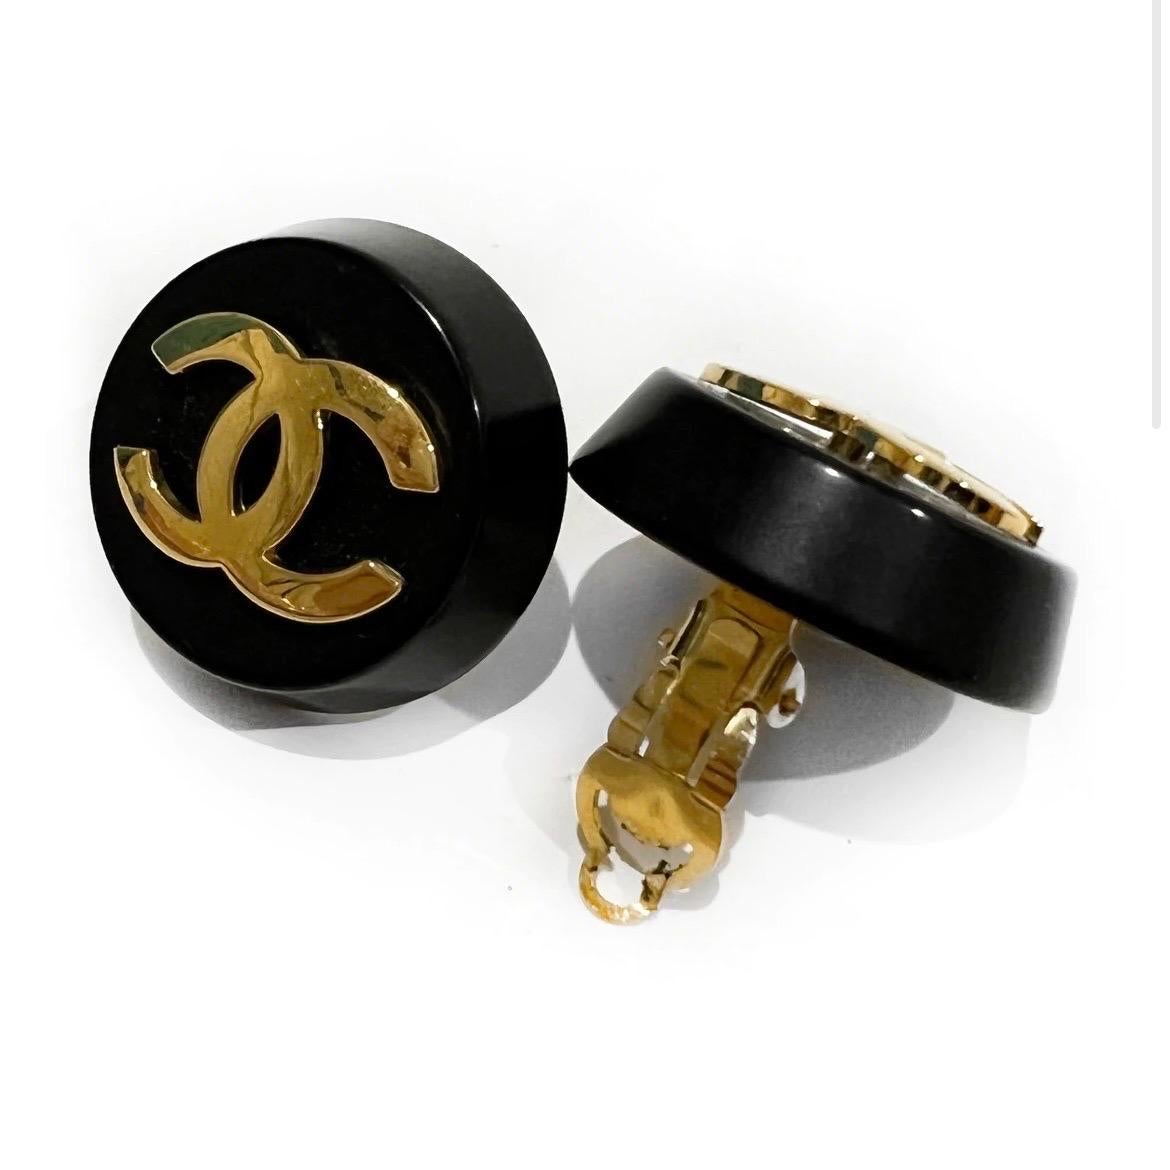 Schwarze Circle Logo Ohrringe mit Clip von Chanel 
Ende der 1980er- Anfang der 1990er Jahre (Sammlung 26 Briefmarken)
Schwarze Harzkugel
Vergoldetes Chanel-Logo in der Mitte 
Hergestellt in Frankreich
Zustand: Ausgezeichneter Vintage-Zustand. Einige